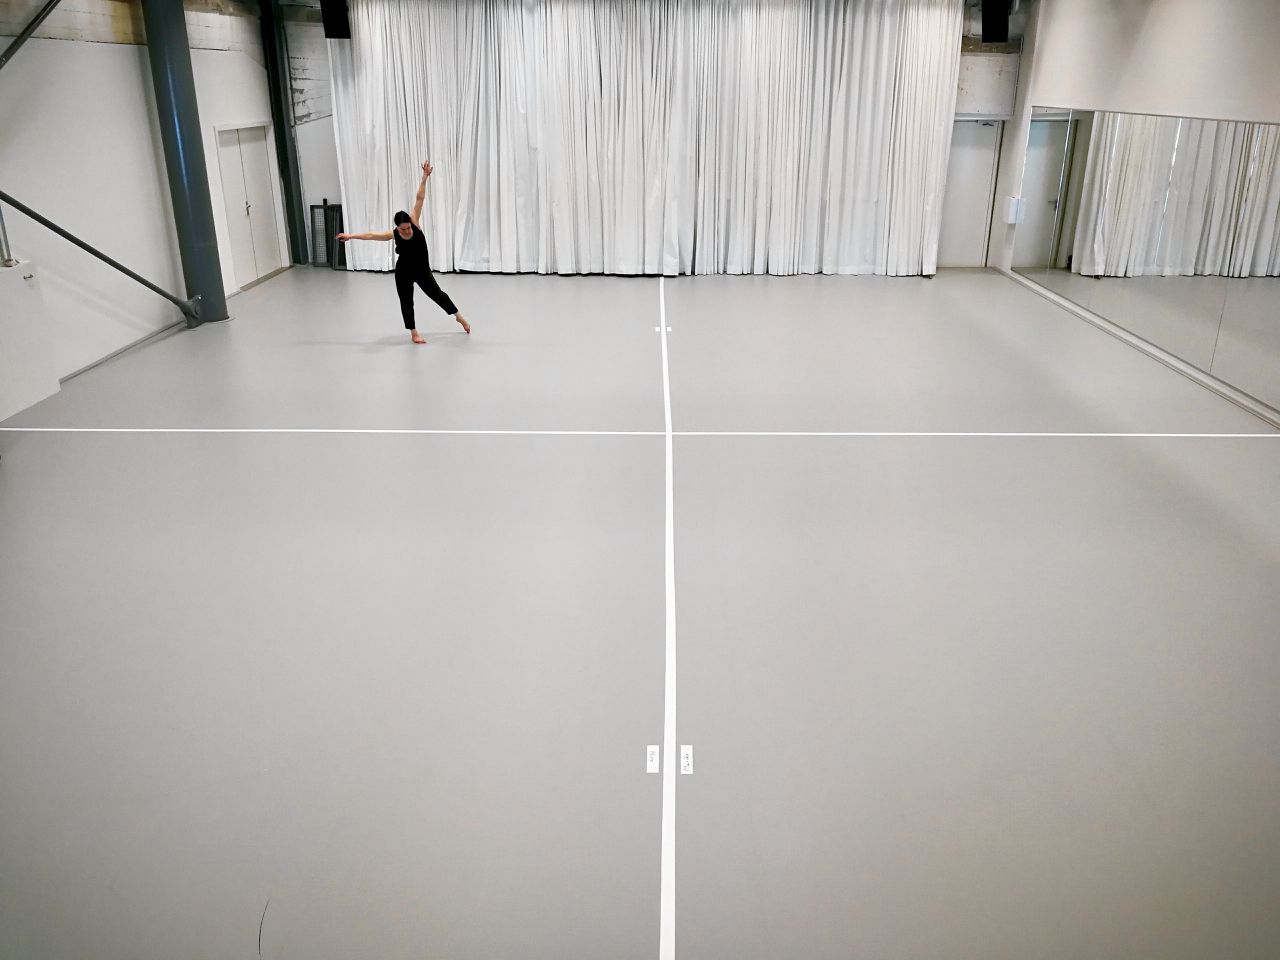 Danser Adi Amit alleen in de studio tijdens haar eerste werkdag voor het project ‘Monuments in solitude’ van Conny Janssen Danst.